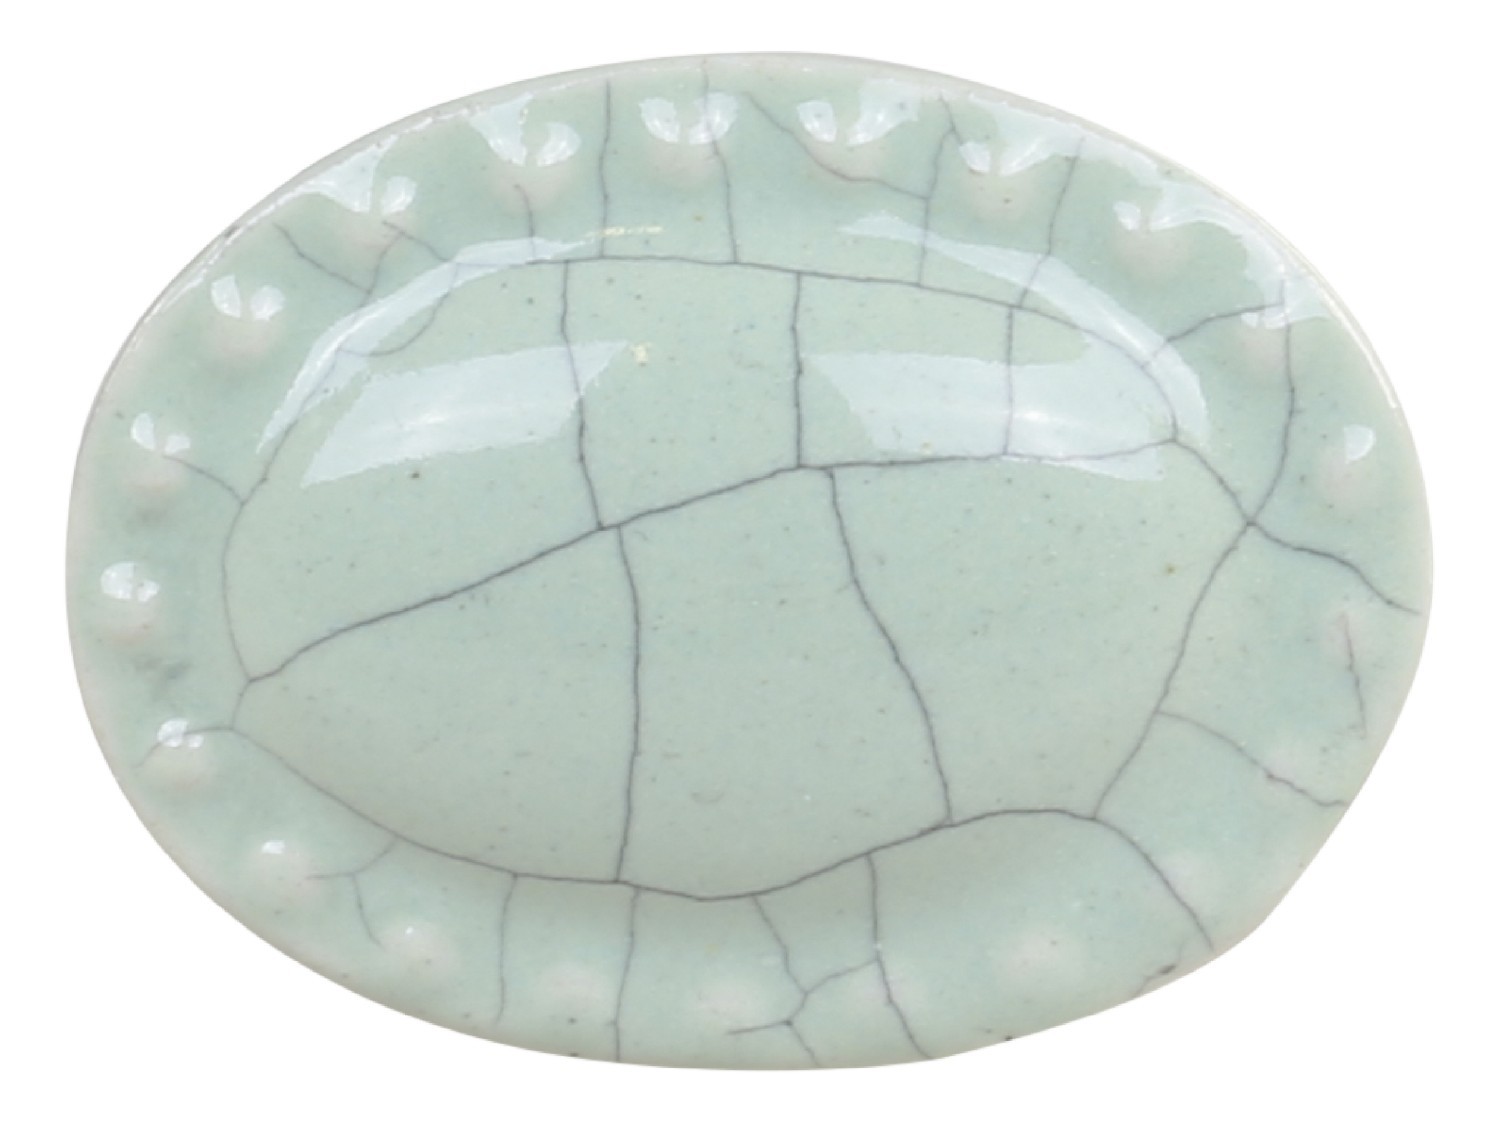 Zelená antik porcelánová úchytka s popraskáním Craez - 4*3 cm 39052221(39522-21)